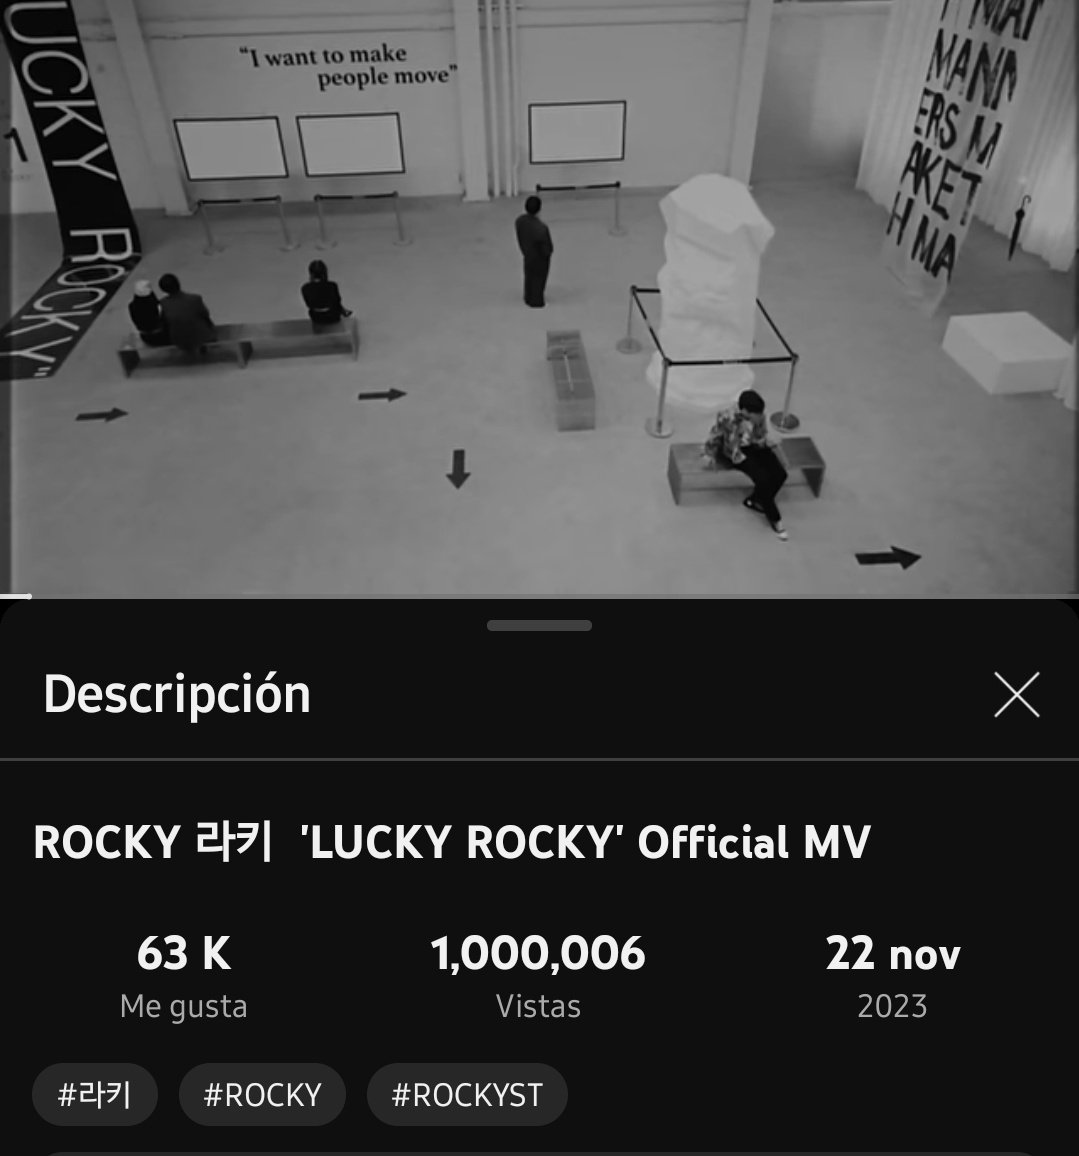 Rocky ha logrado su primer millón de reproducciones de 'Lucky Rocky'
Muchas felicidades!! 🥳🥳🥳
@p_rockyent
@onefinedayent
#ROCKY #ROCKYST #HAMO #LuckyRocky